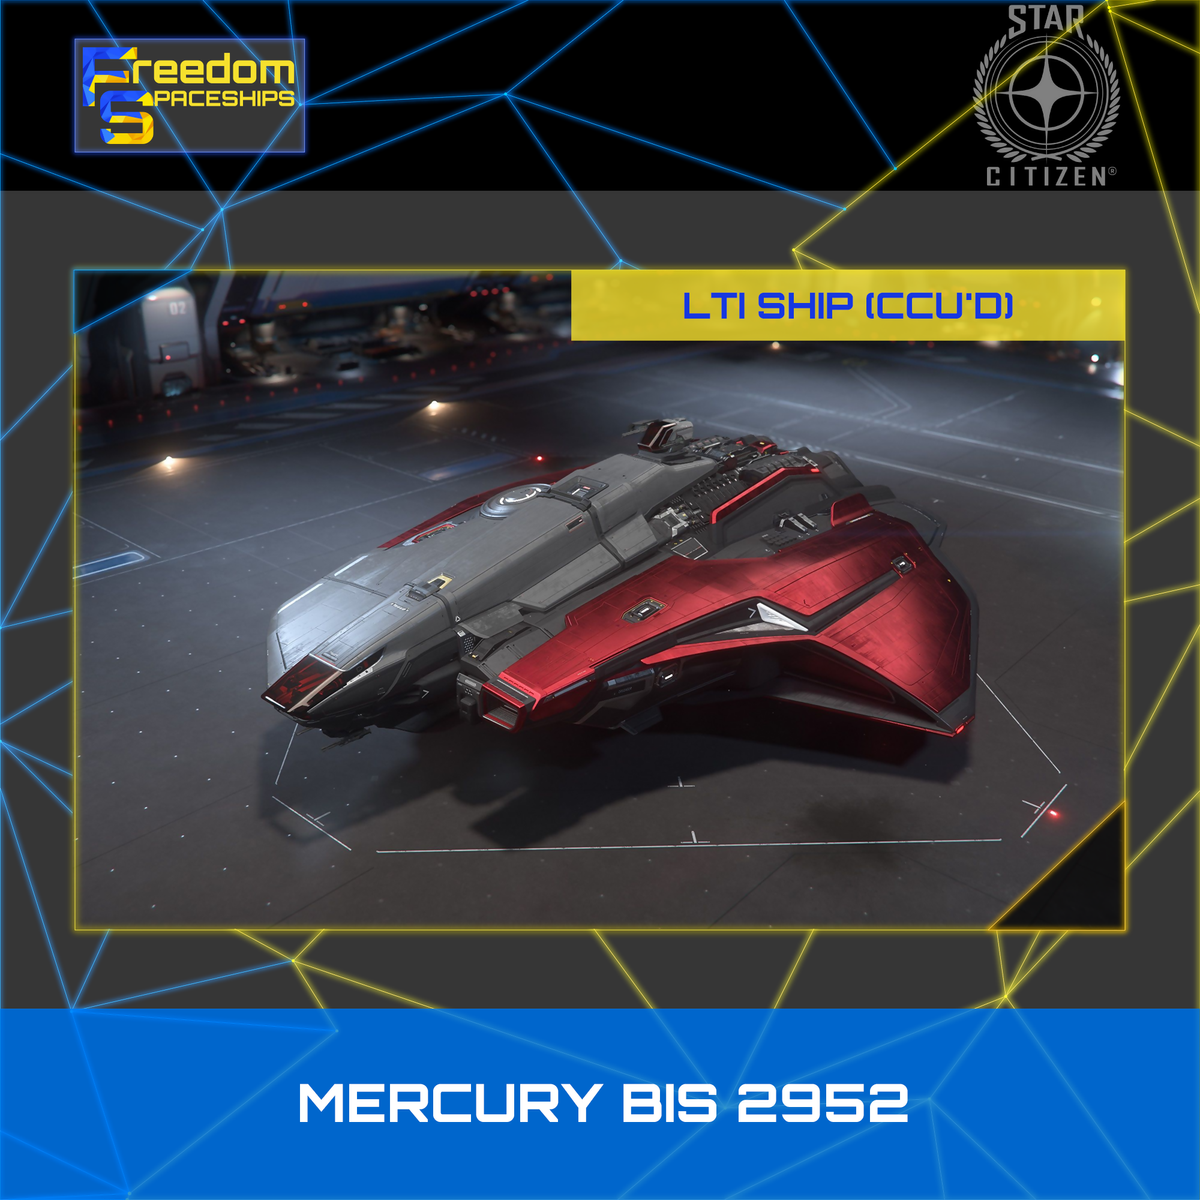 Crusader Mercury Star Runner BIS 2952 - LTI - CCU'd